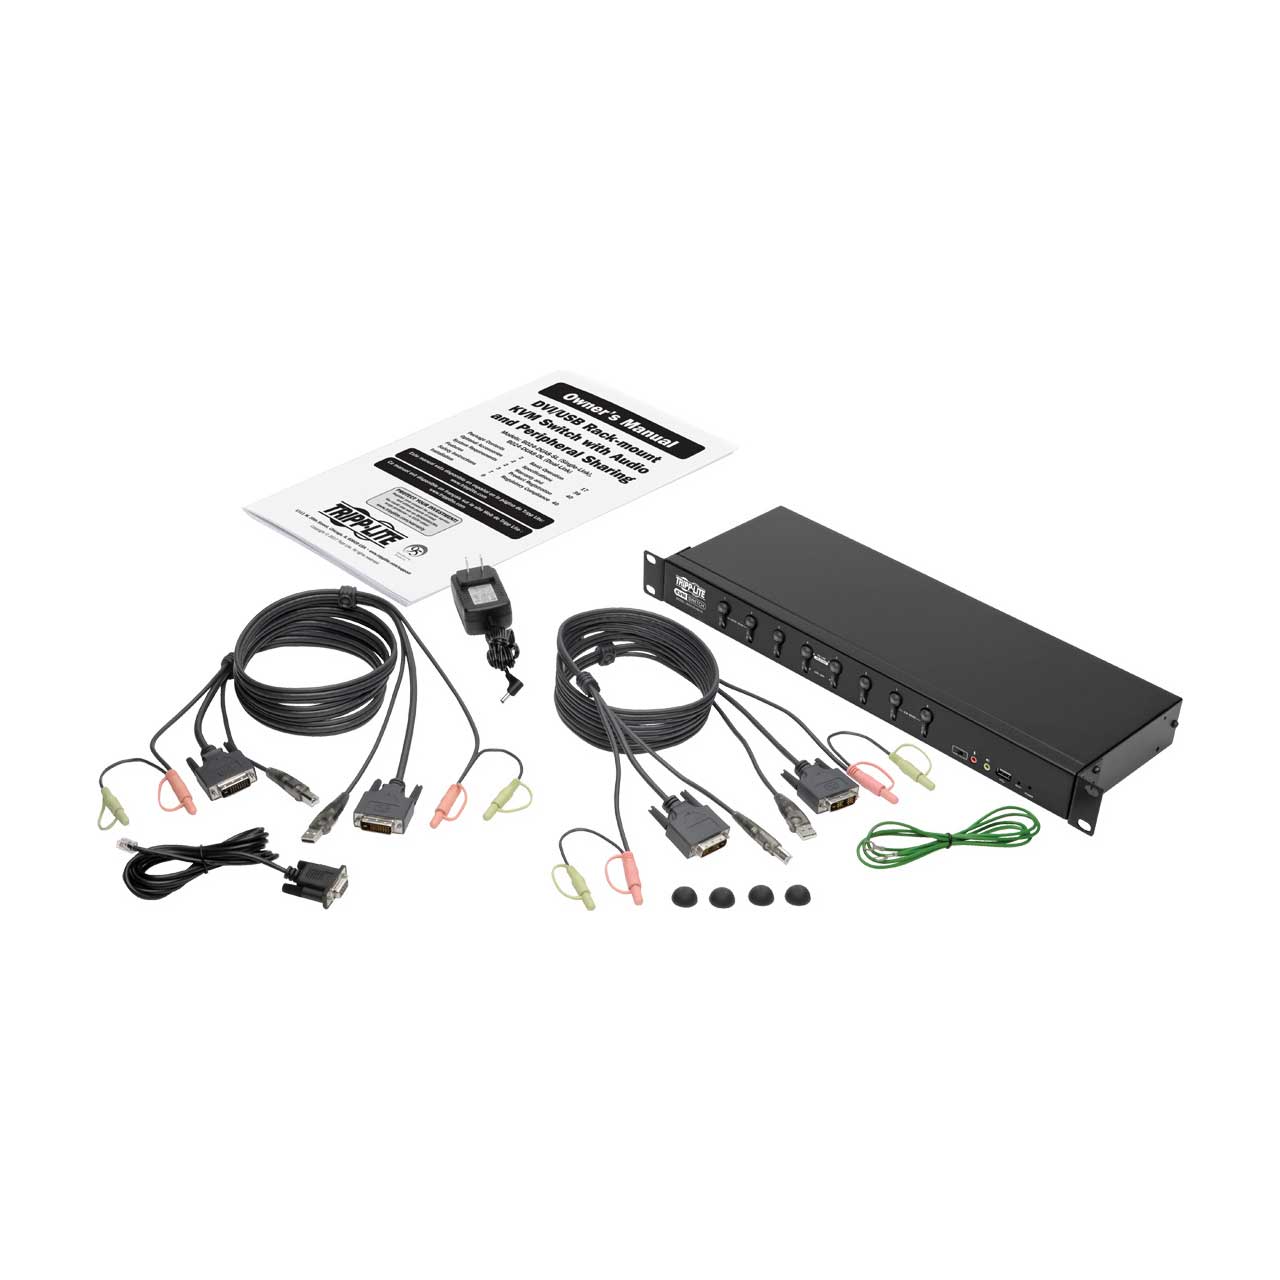 Tripp Lite DisplayPort/USB KVM Switch 8-Port with Audio/Video and USB  Peripheral Sharing, 4K 60 Hz, 1U Rack-Mount - KVM - B024-DPU08 - KVM  Switches 